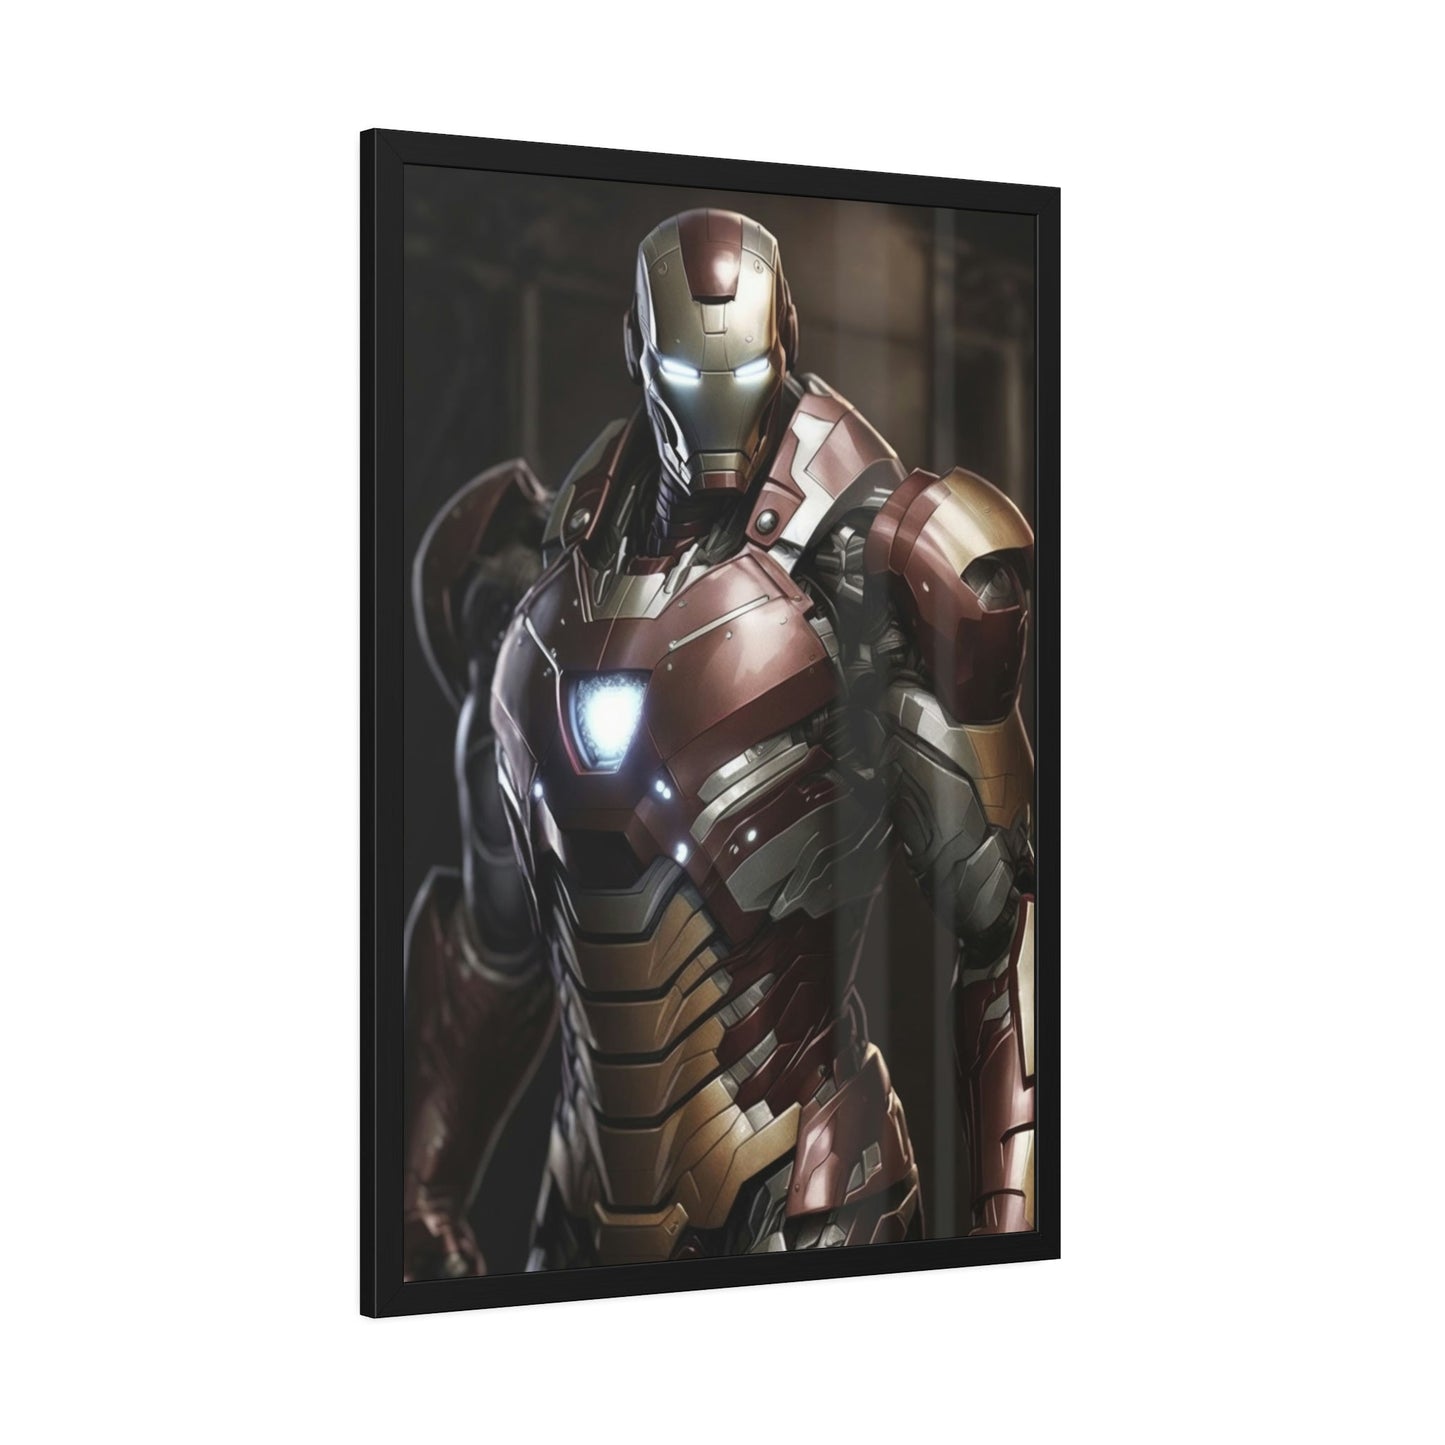 The Invincible Iron Man: A Marvelous Portrait